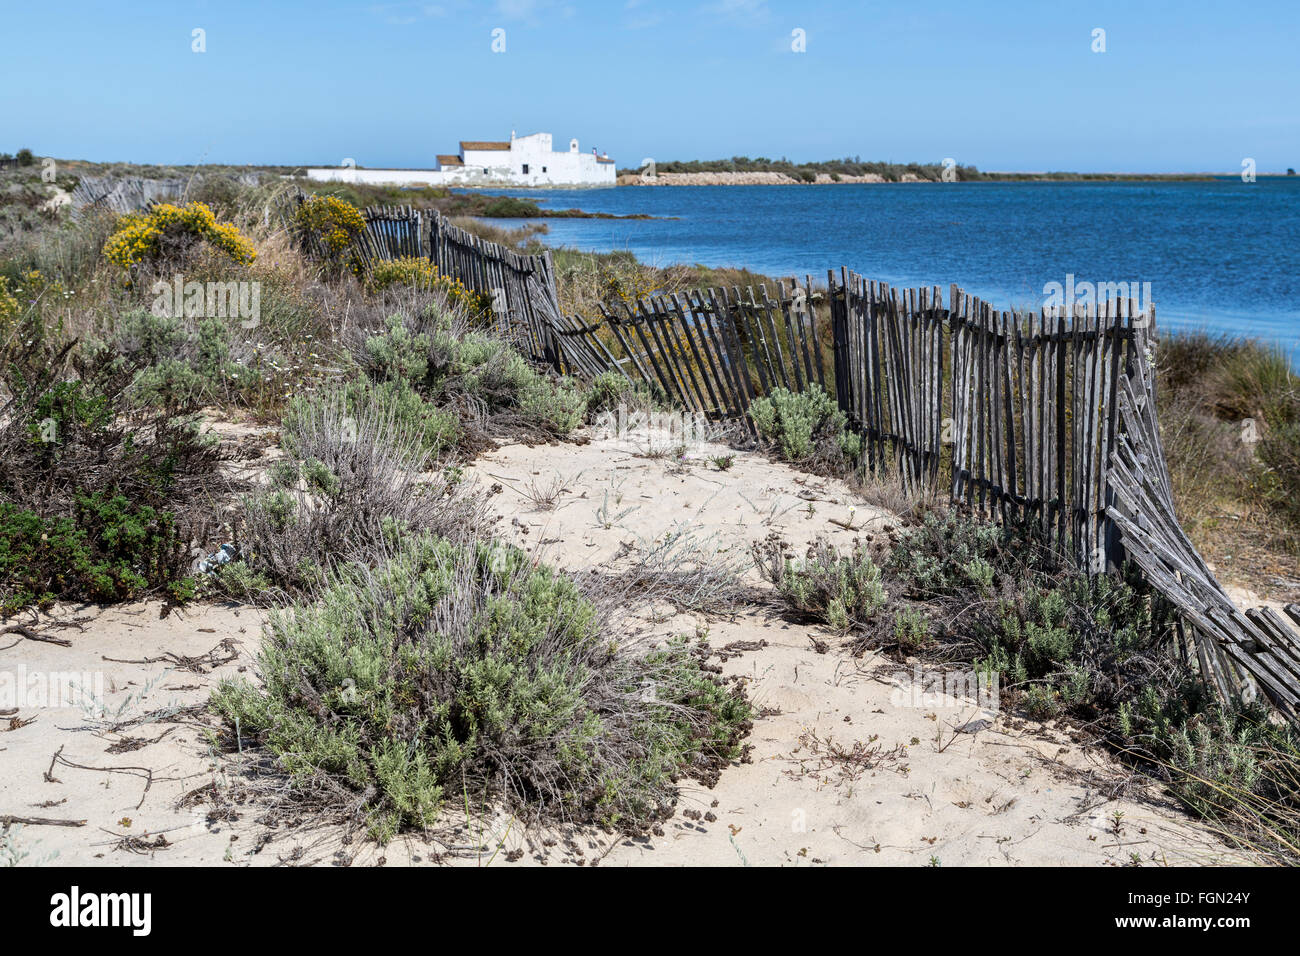 Las dunas de arena y cerco roto en Moinho de Mare, Molino de Marea, la Quinta de Marim, Parque Natural de la Ria Formosa, en Algarve, Portugal Foto de stock